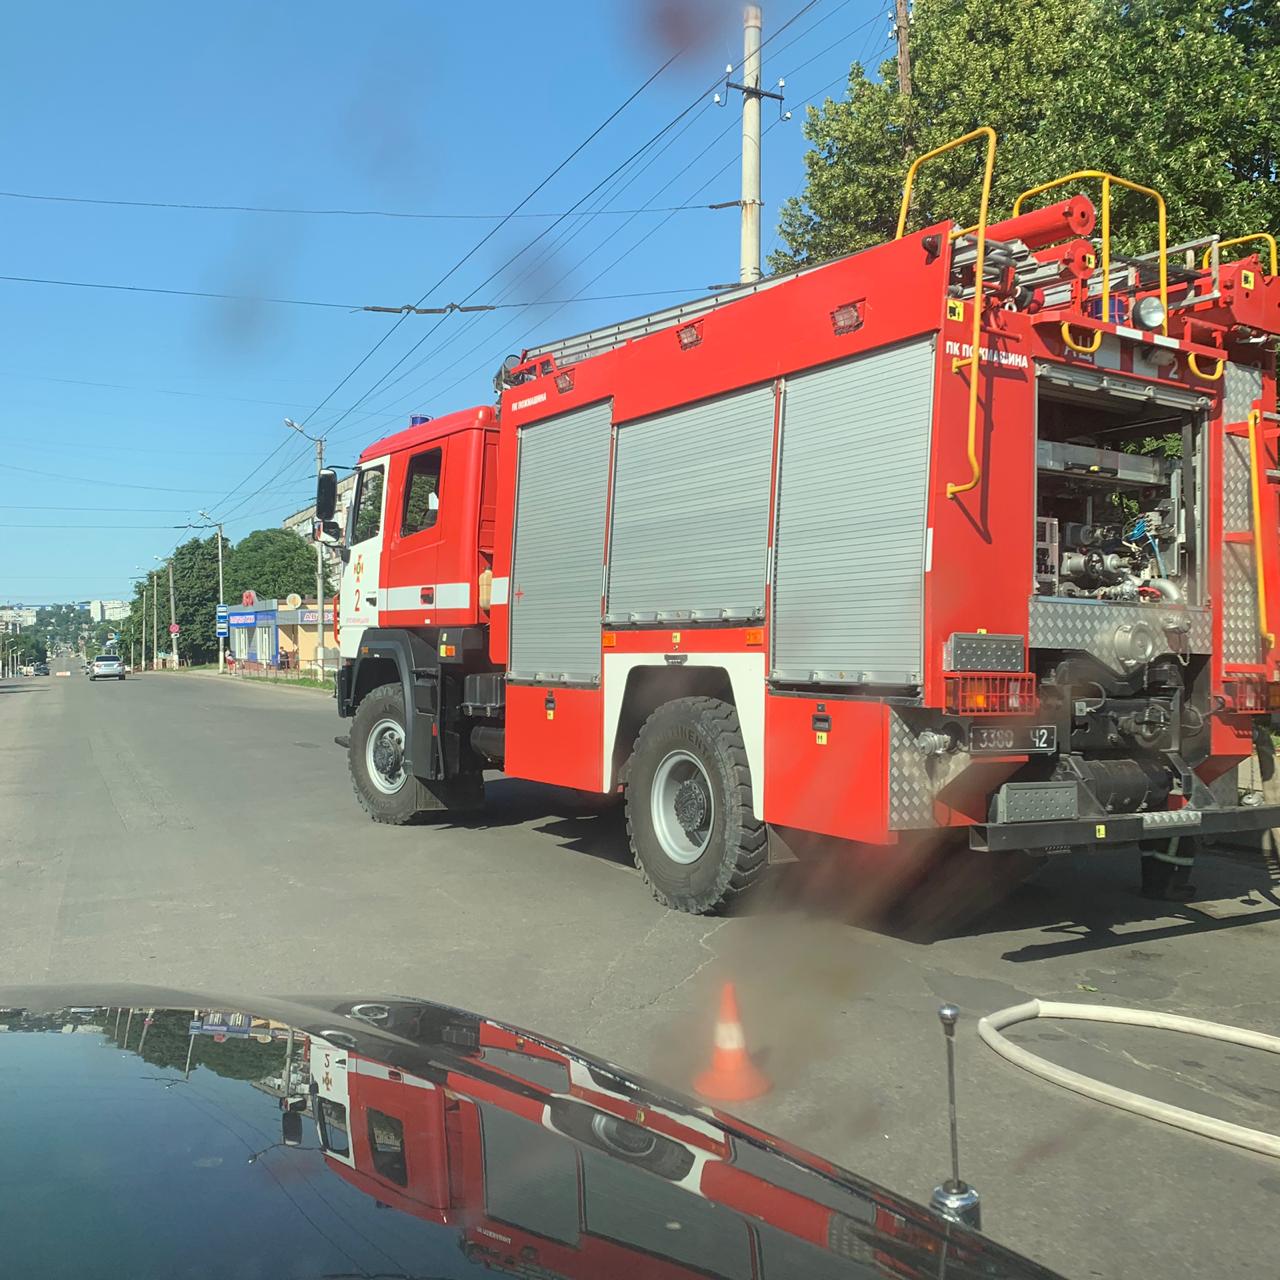 ДТП у Кропивницькому: перекинулася &#8220;швидка&#8221; та зіштовхнулися три автівки. ФОТО